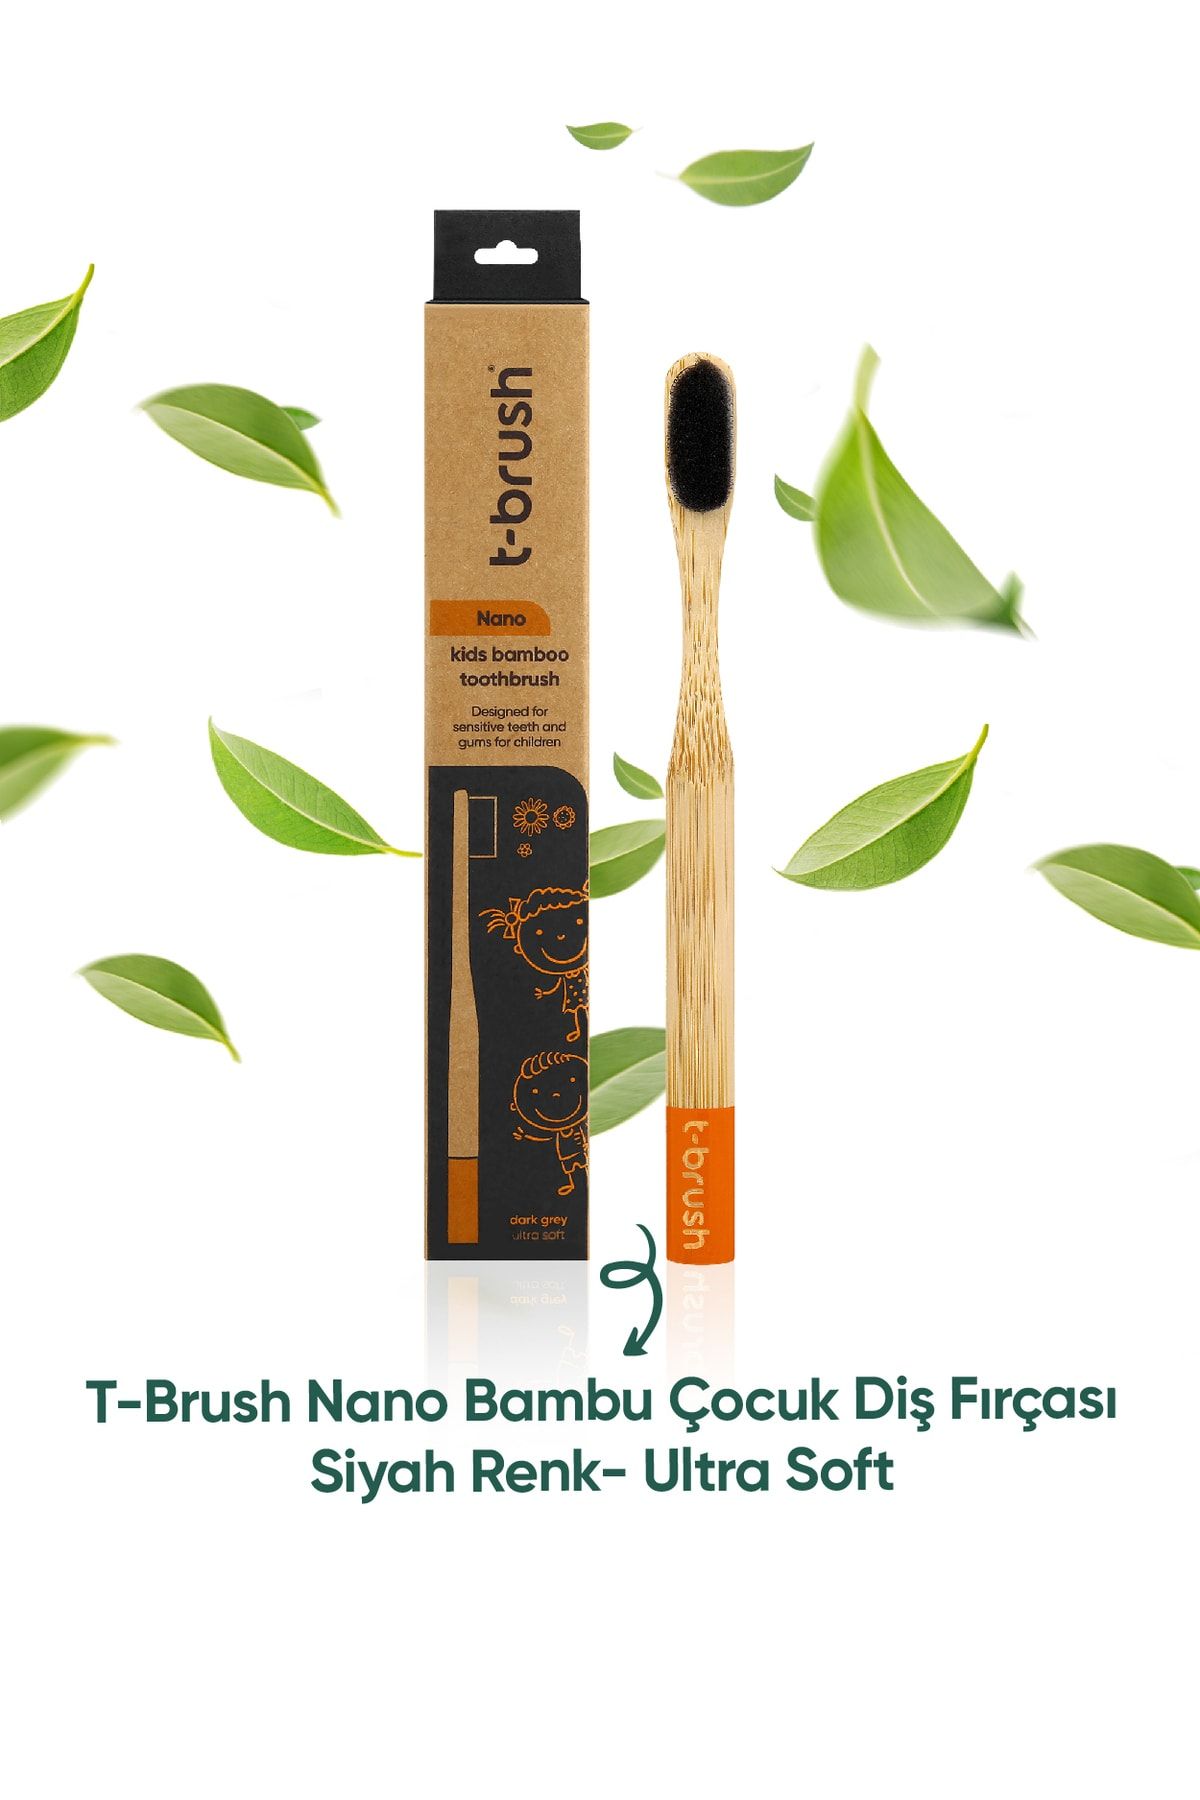 TBRUSH Nano Doğal Bambu Vegan Çocuk Diş Fırçası - Siyah Renk - Ultra Soft - Plastiksiz